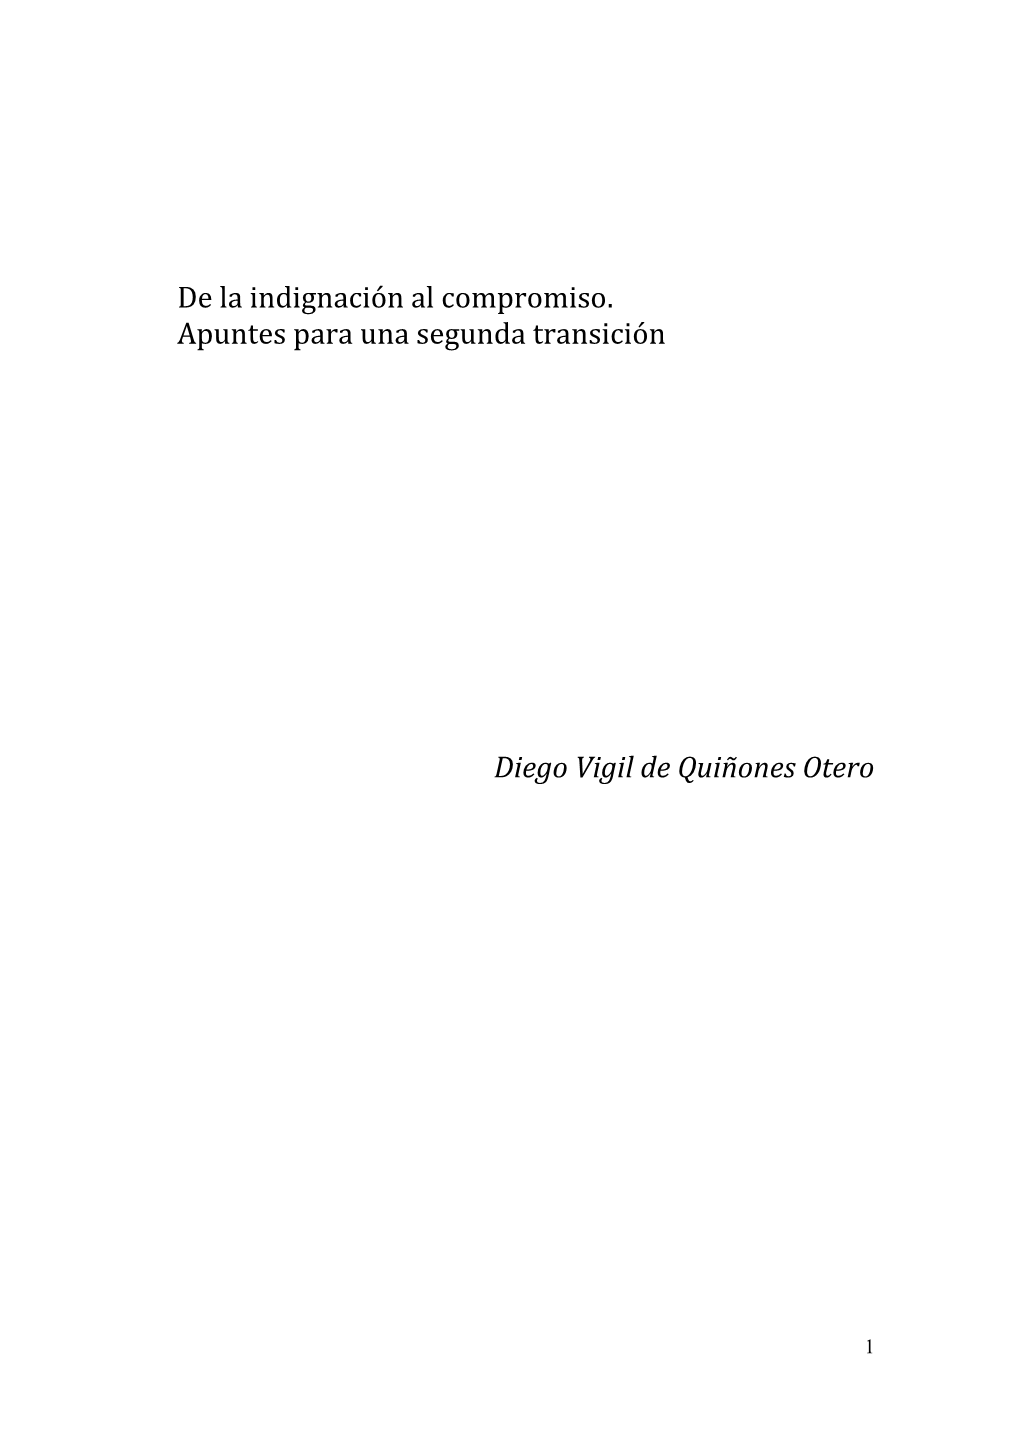 De La Indignación Al Compromiso. Apuntes Para Una Segunda Transición Diego Vigil De Quiñones Otero